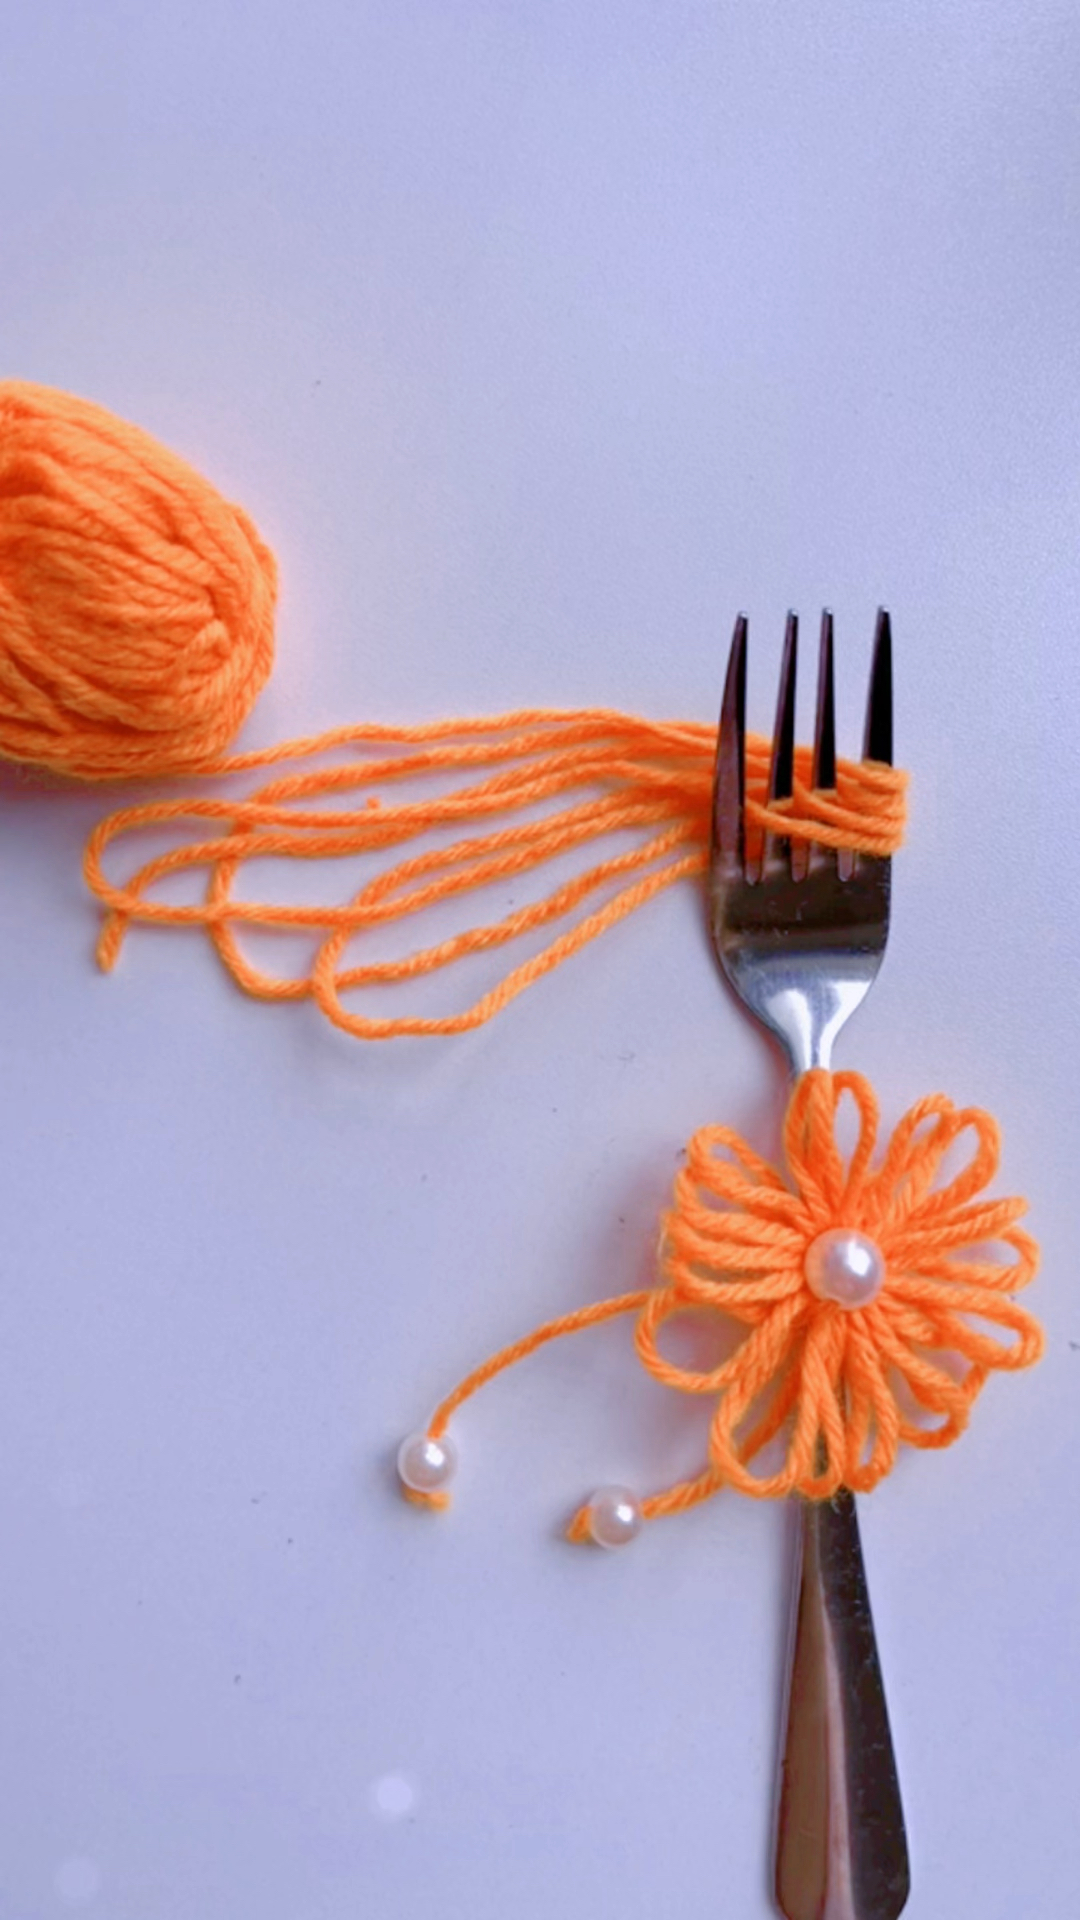 创意手工diy,毛线结合叉子简单就制作出漂亮的毛线胸花